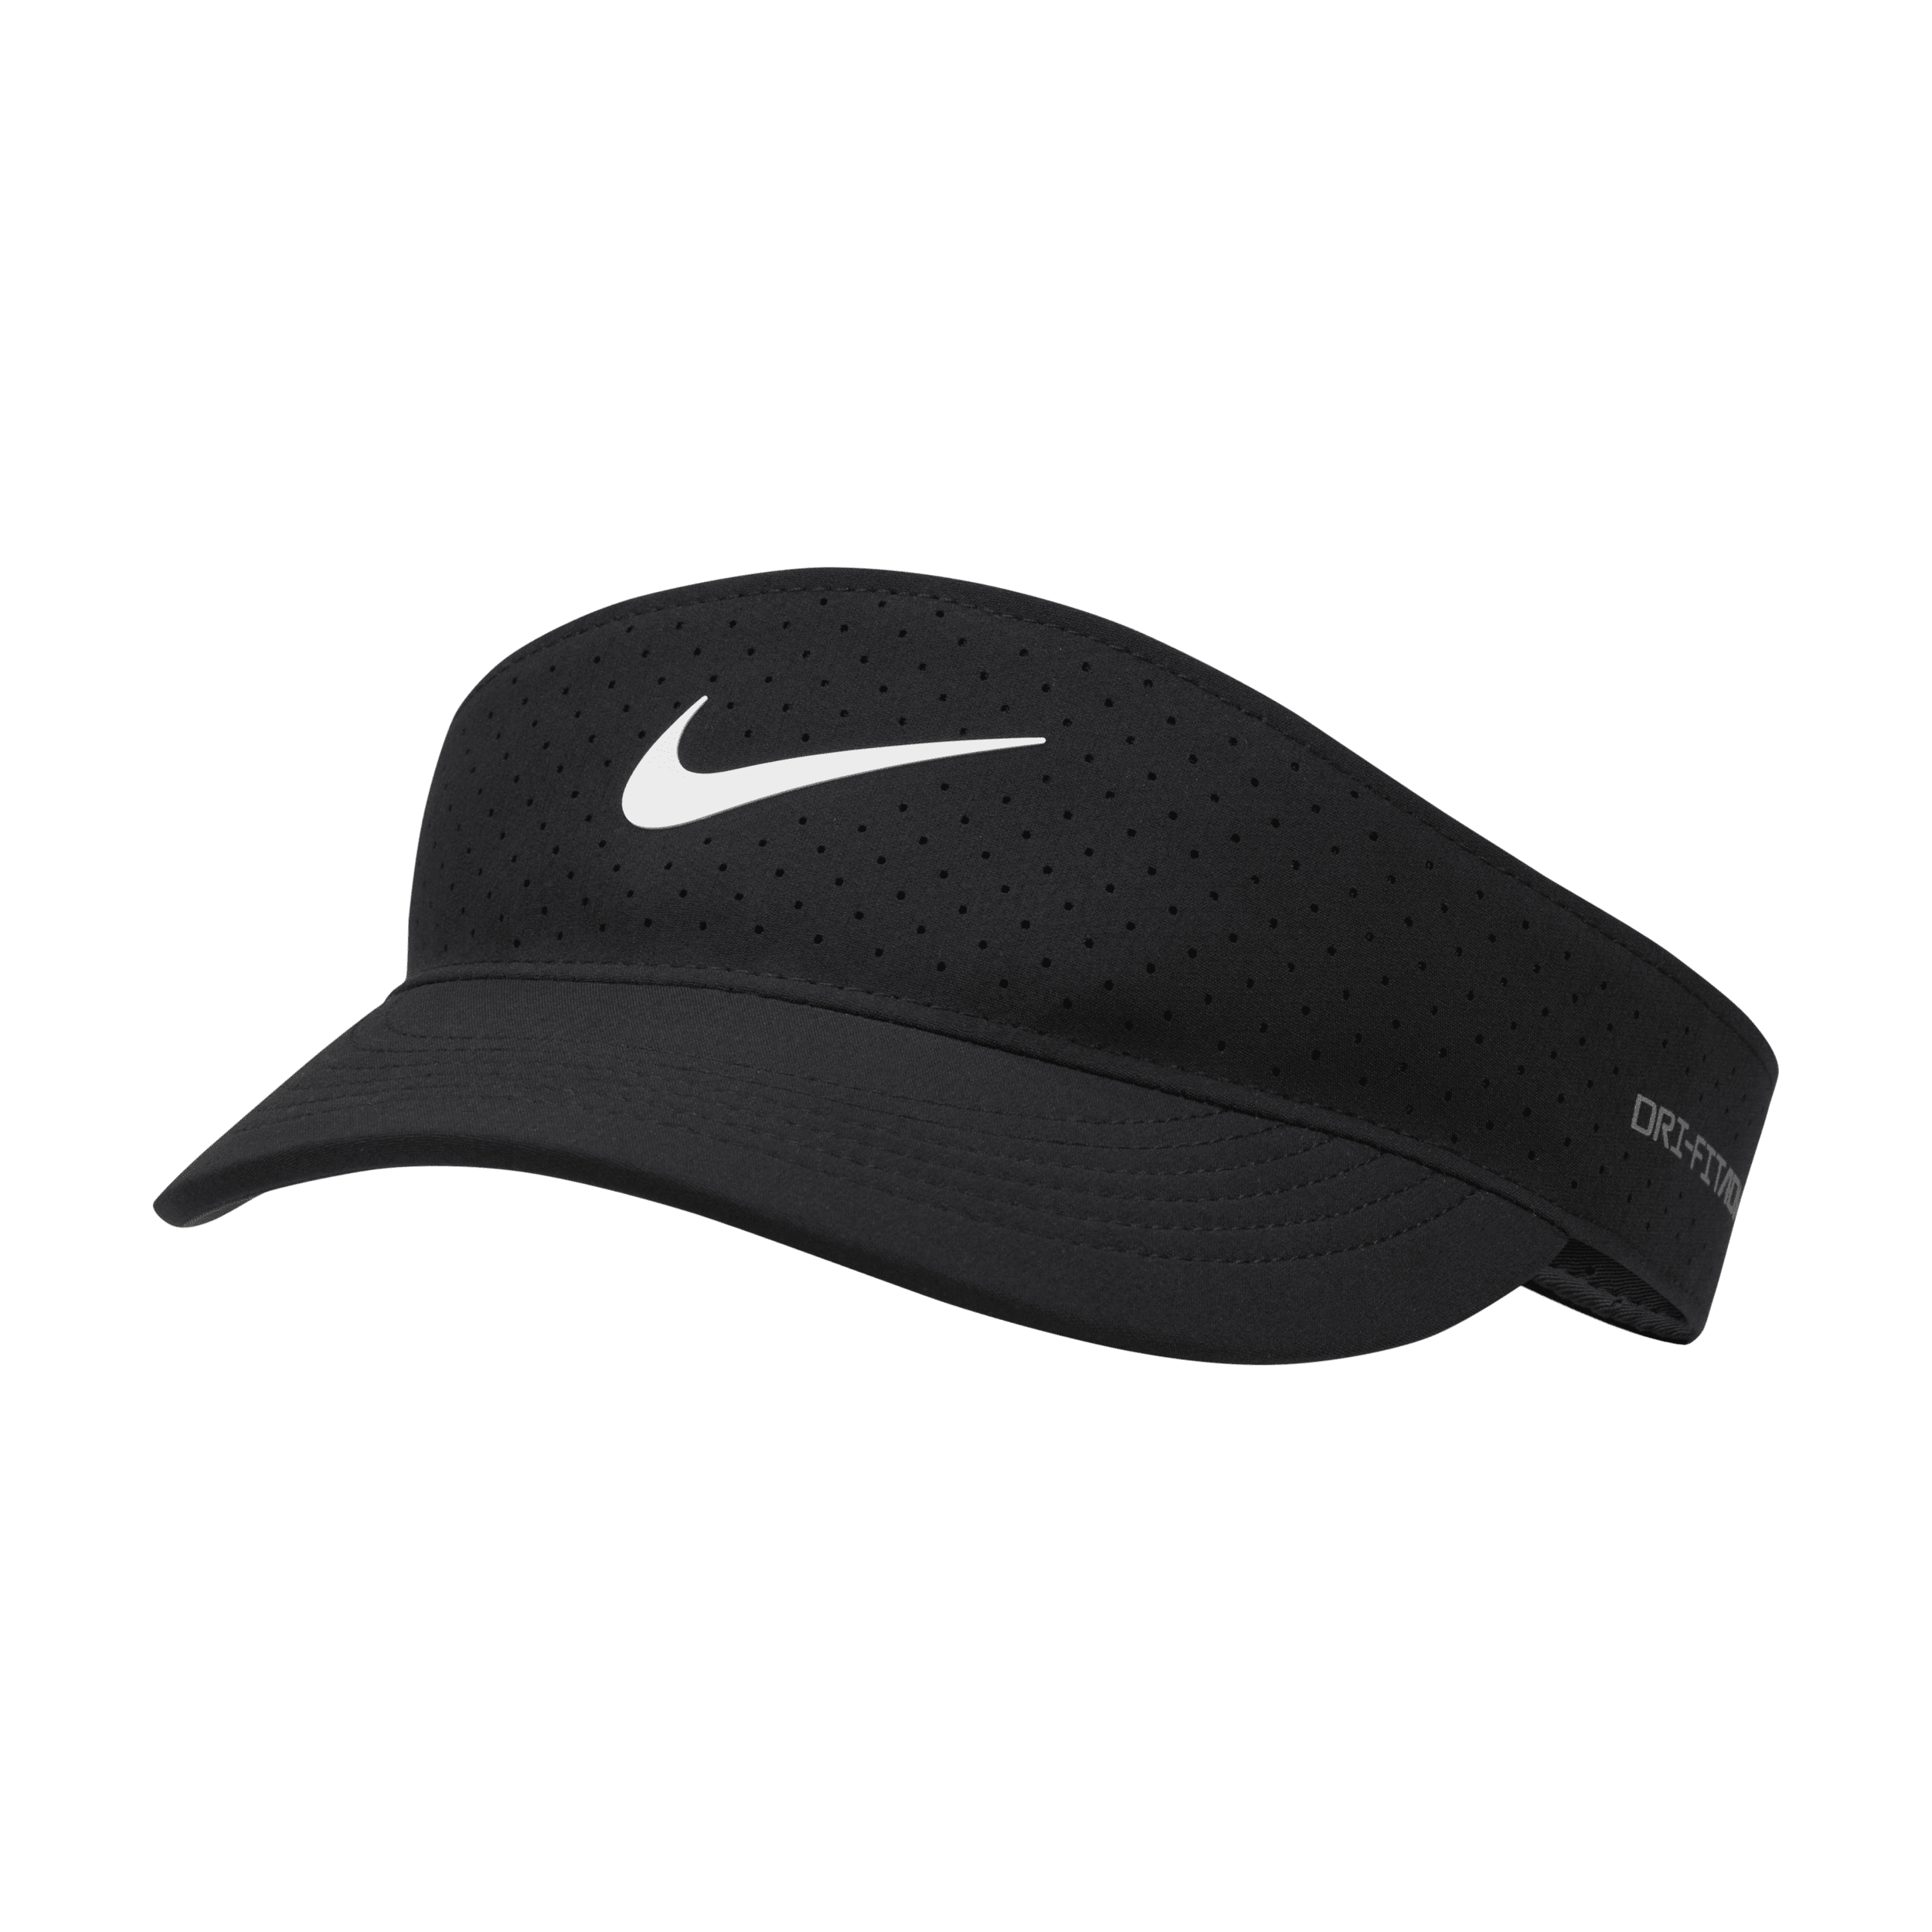 Nike Dri-FIT ADV Ace tenniszonneklep - Zwart